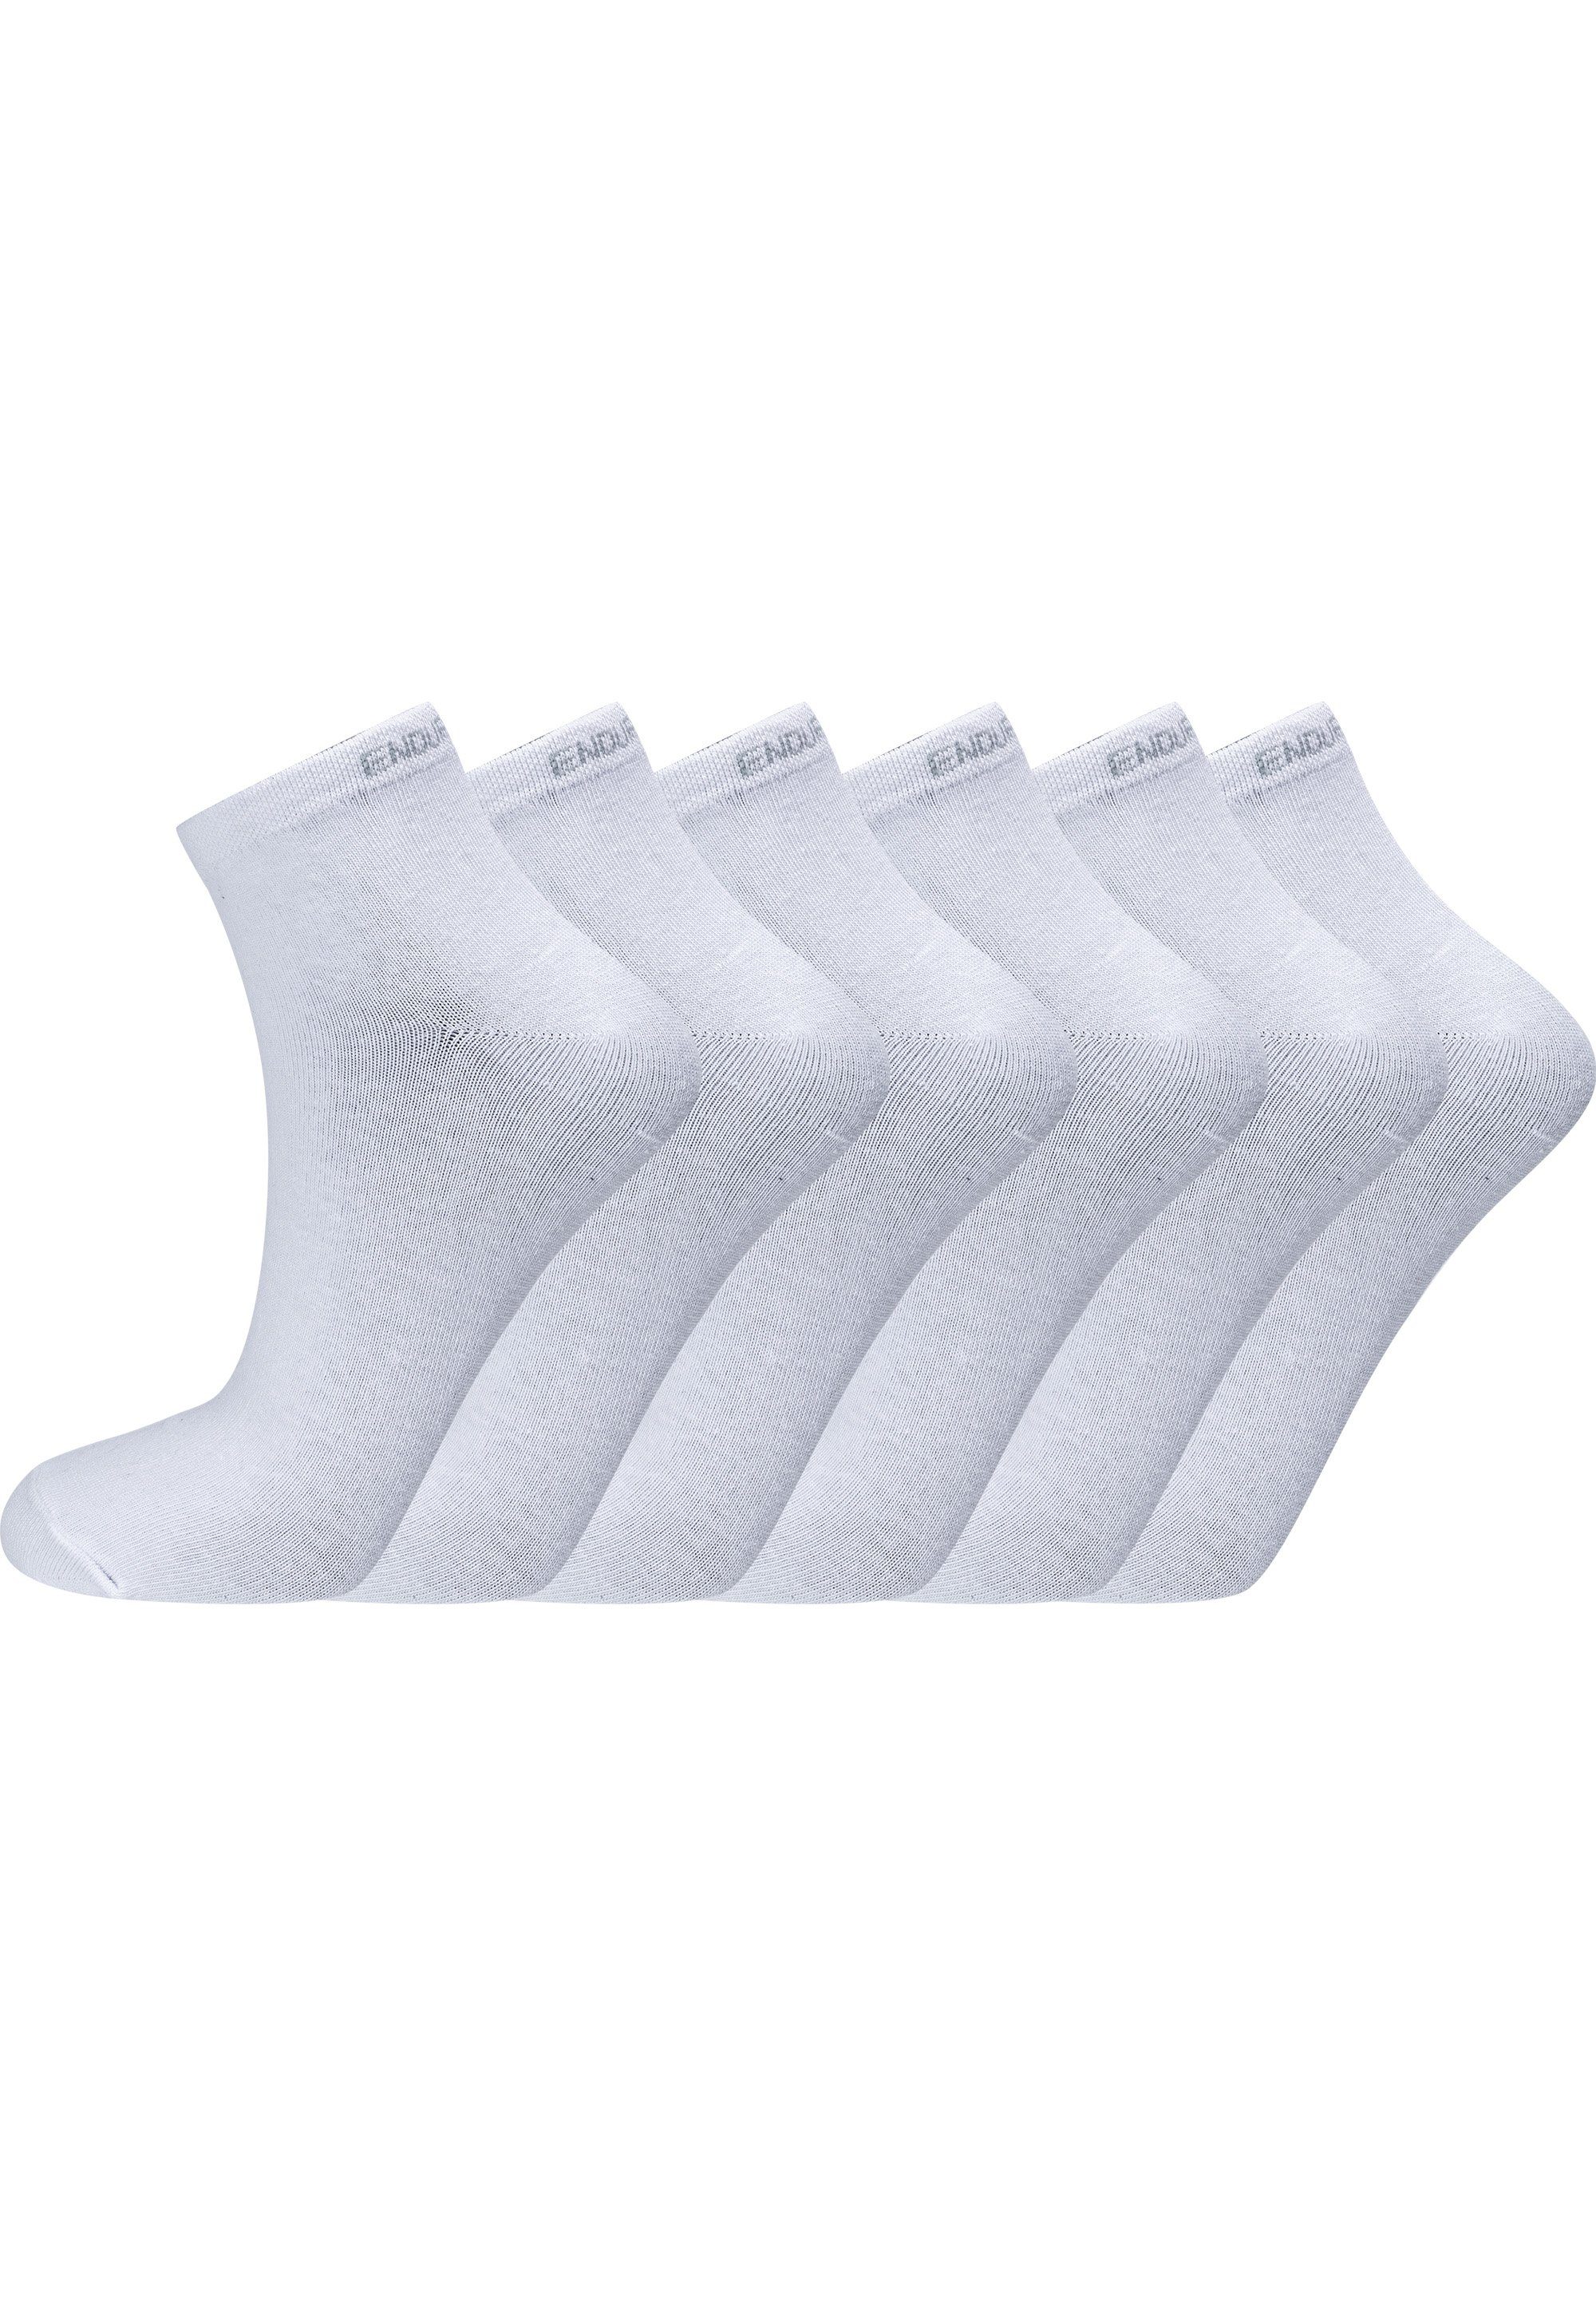 ENDURANCE Socken Ibi (6-Paar) mit sehr hohem Baumwolle-Anteil weiß